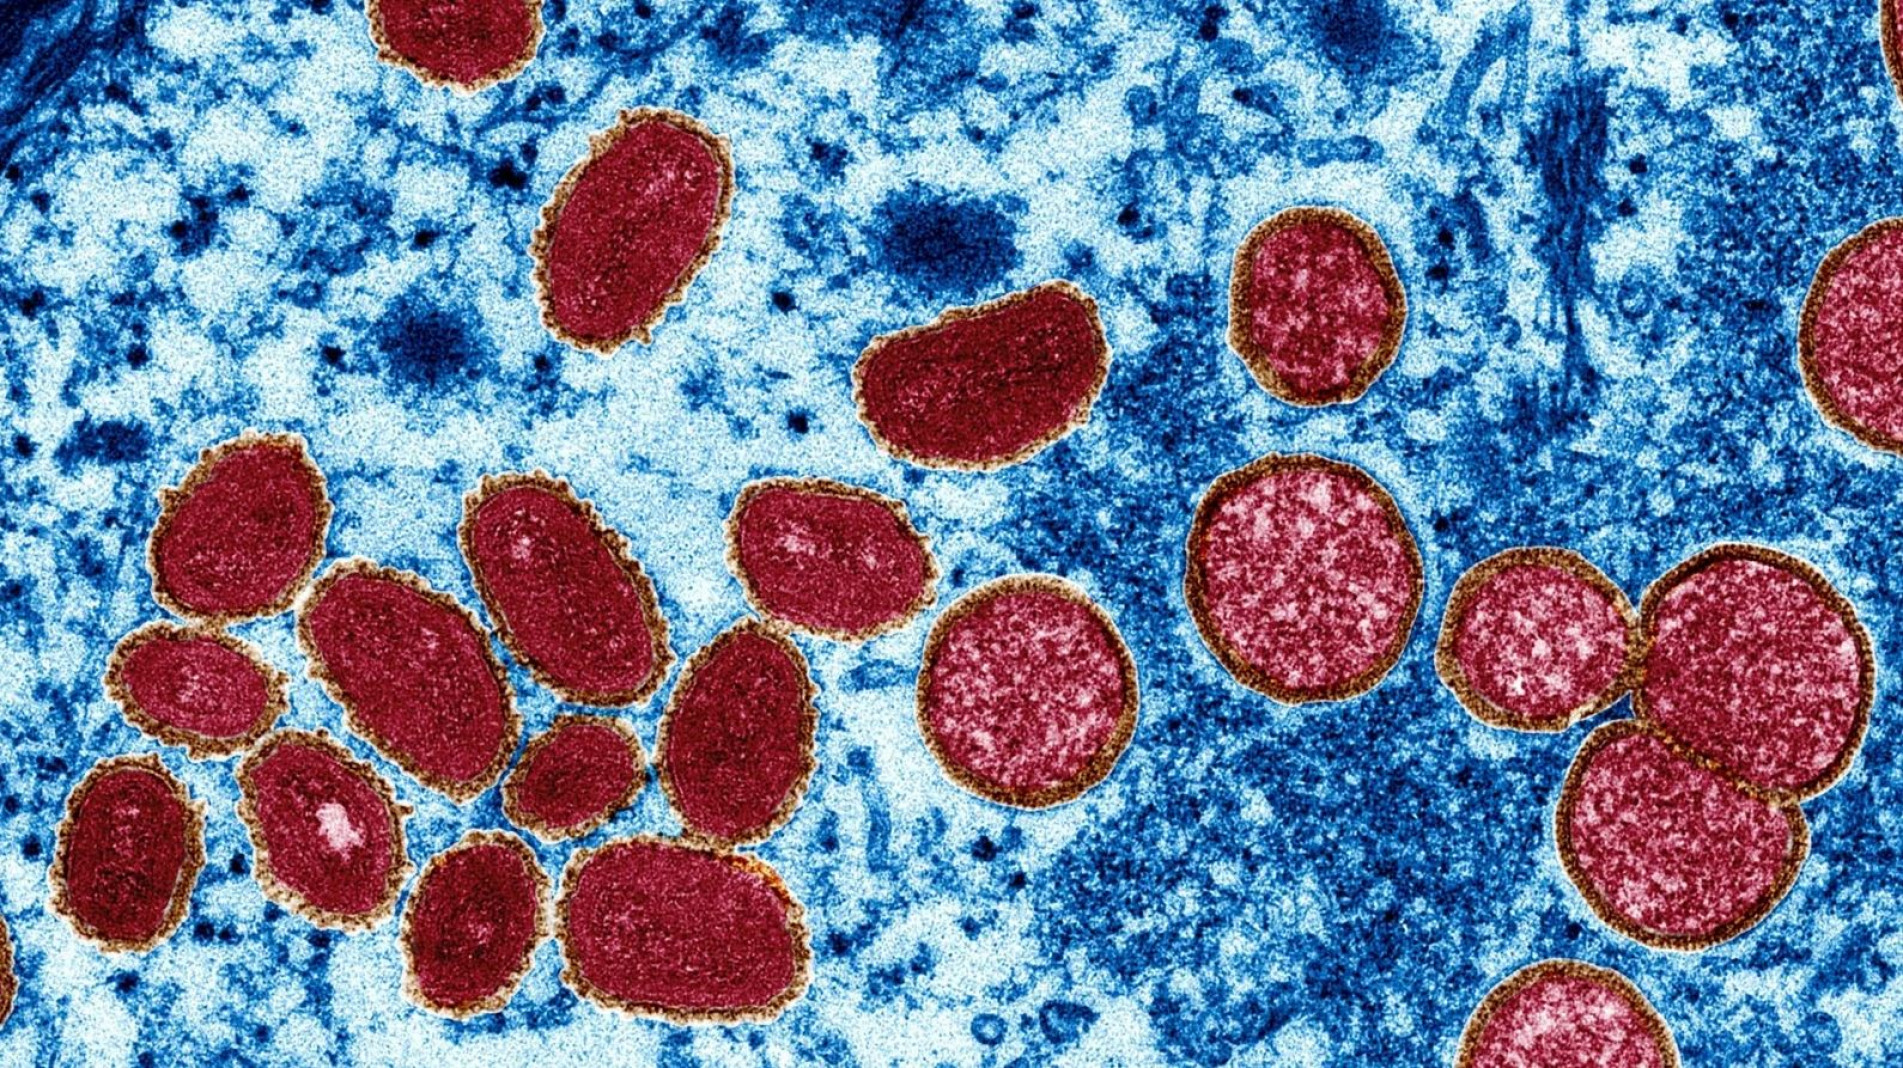 Esta imagem de microscópio eletrônico mostra partículas do vírus da varíola dos macacos coletadas de uma amostra de pele humana durante o surto de 2003. À esquerda estão partículas de vírus maduras e ovais; à direita há vírus imaturos esféricos e arqueados